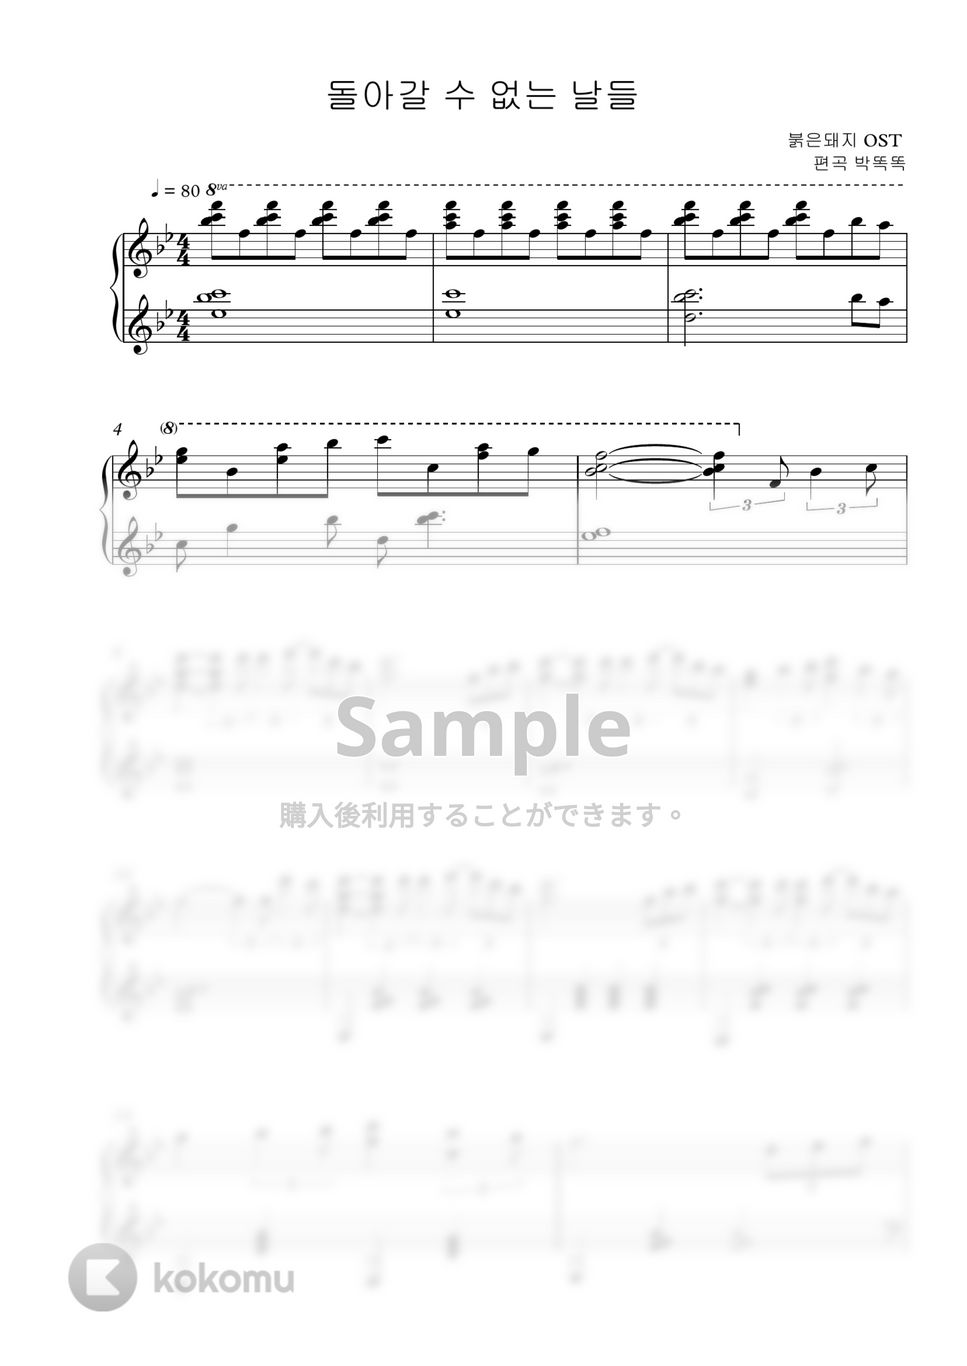 紅の豚 OST - 歸らざる日日 (Calm piano ver.🎹) by PARK DDOK DDOK